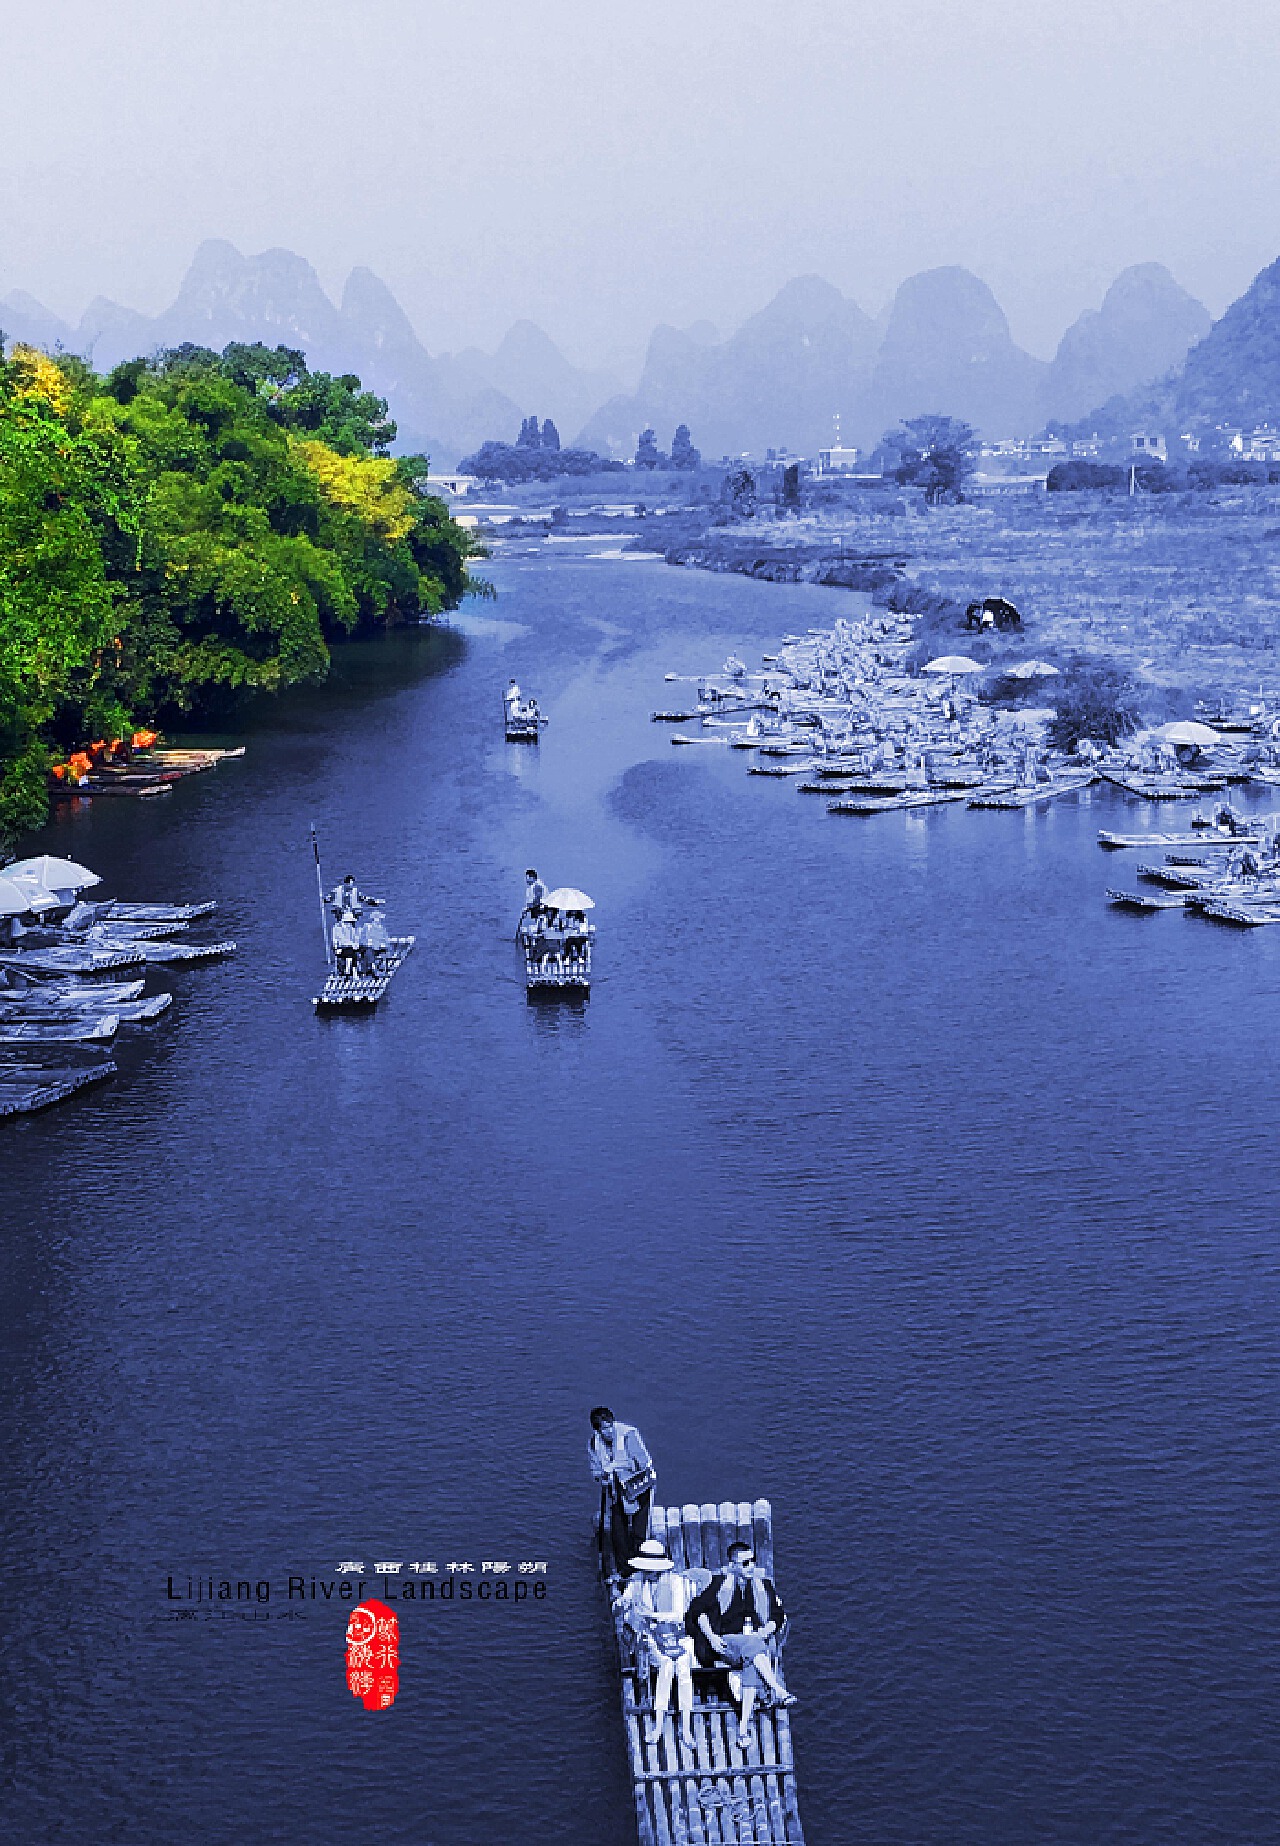 广西 桂林 风景 - Pixabay上的免费照片 - Pixabay